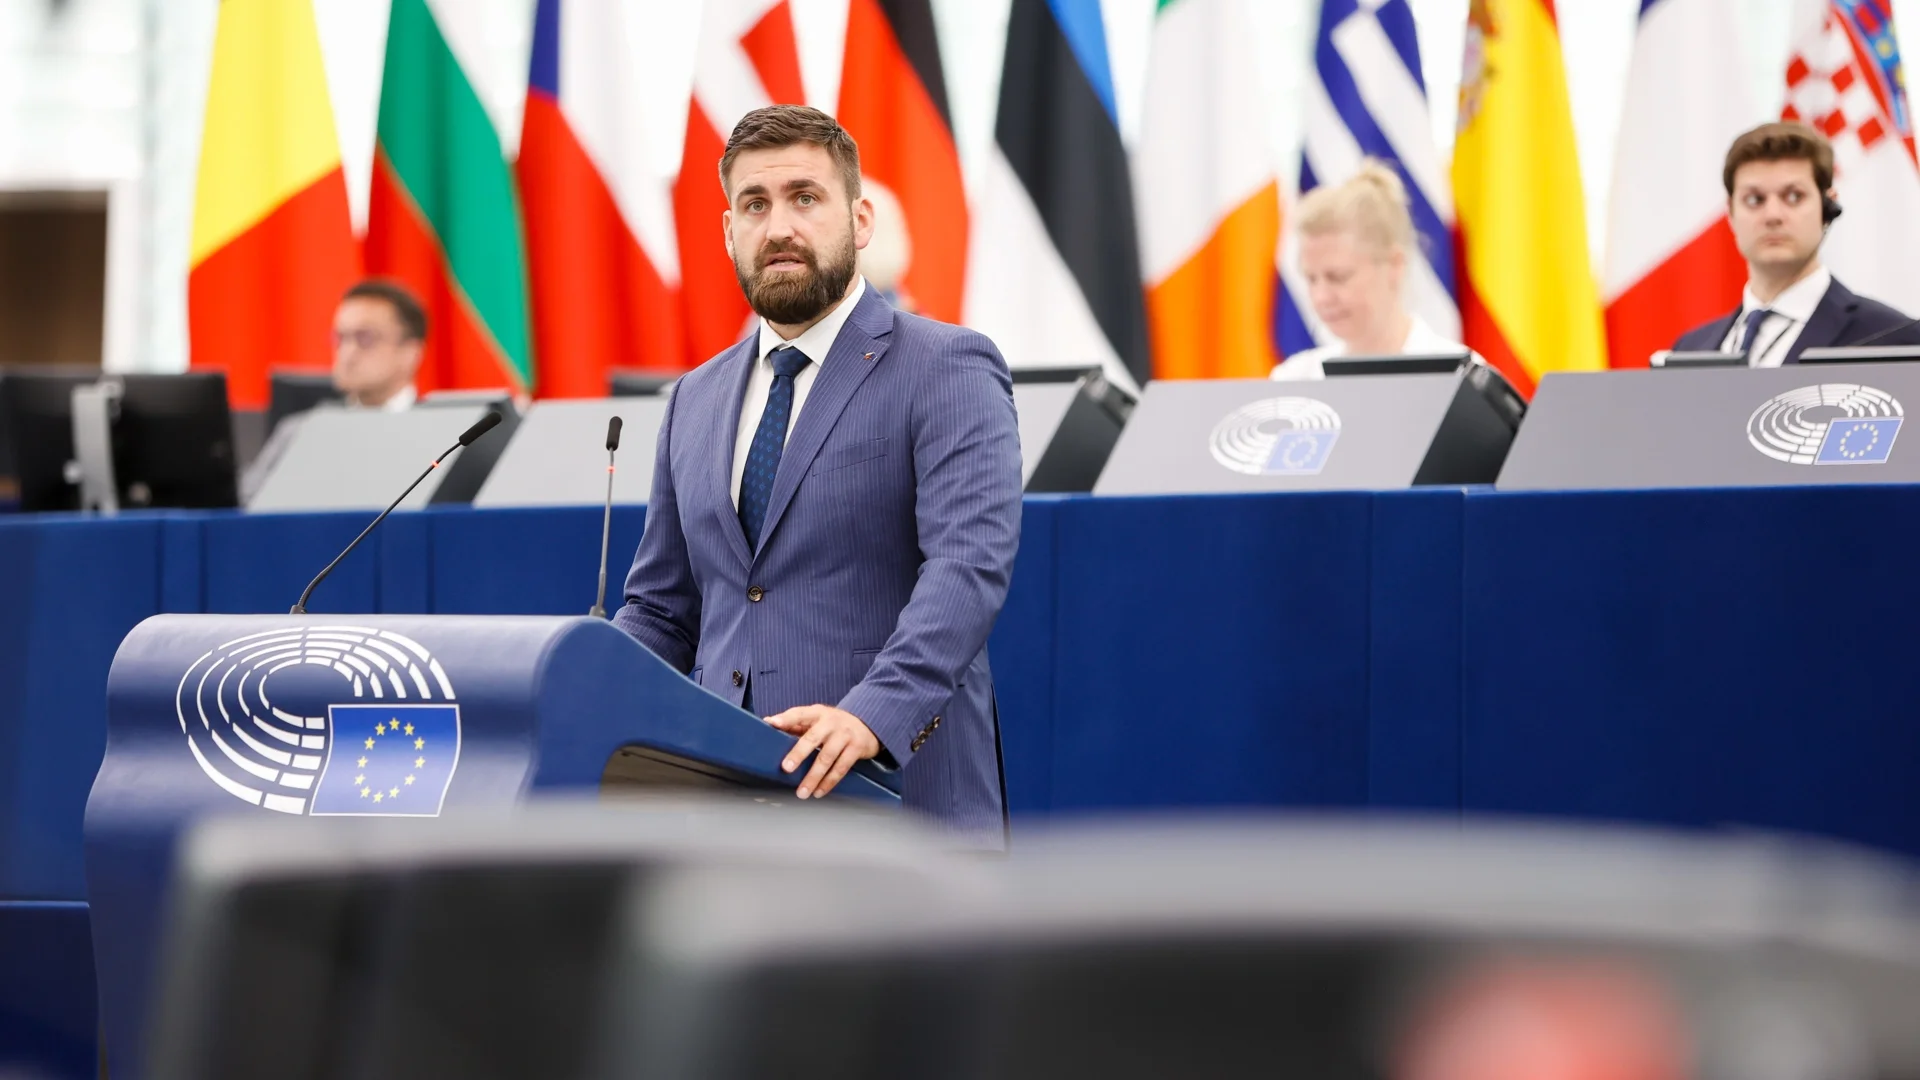 "Или прилагате двойни стандарти, или лъжете": Евродепутатът Андрей Новаков атакува Австрия за Шенген (ВИДЕО)